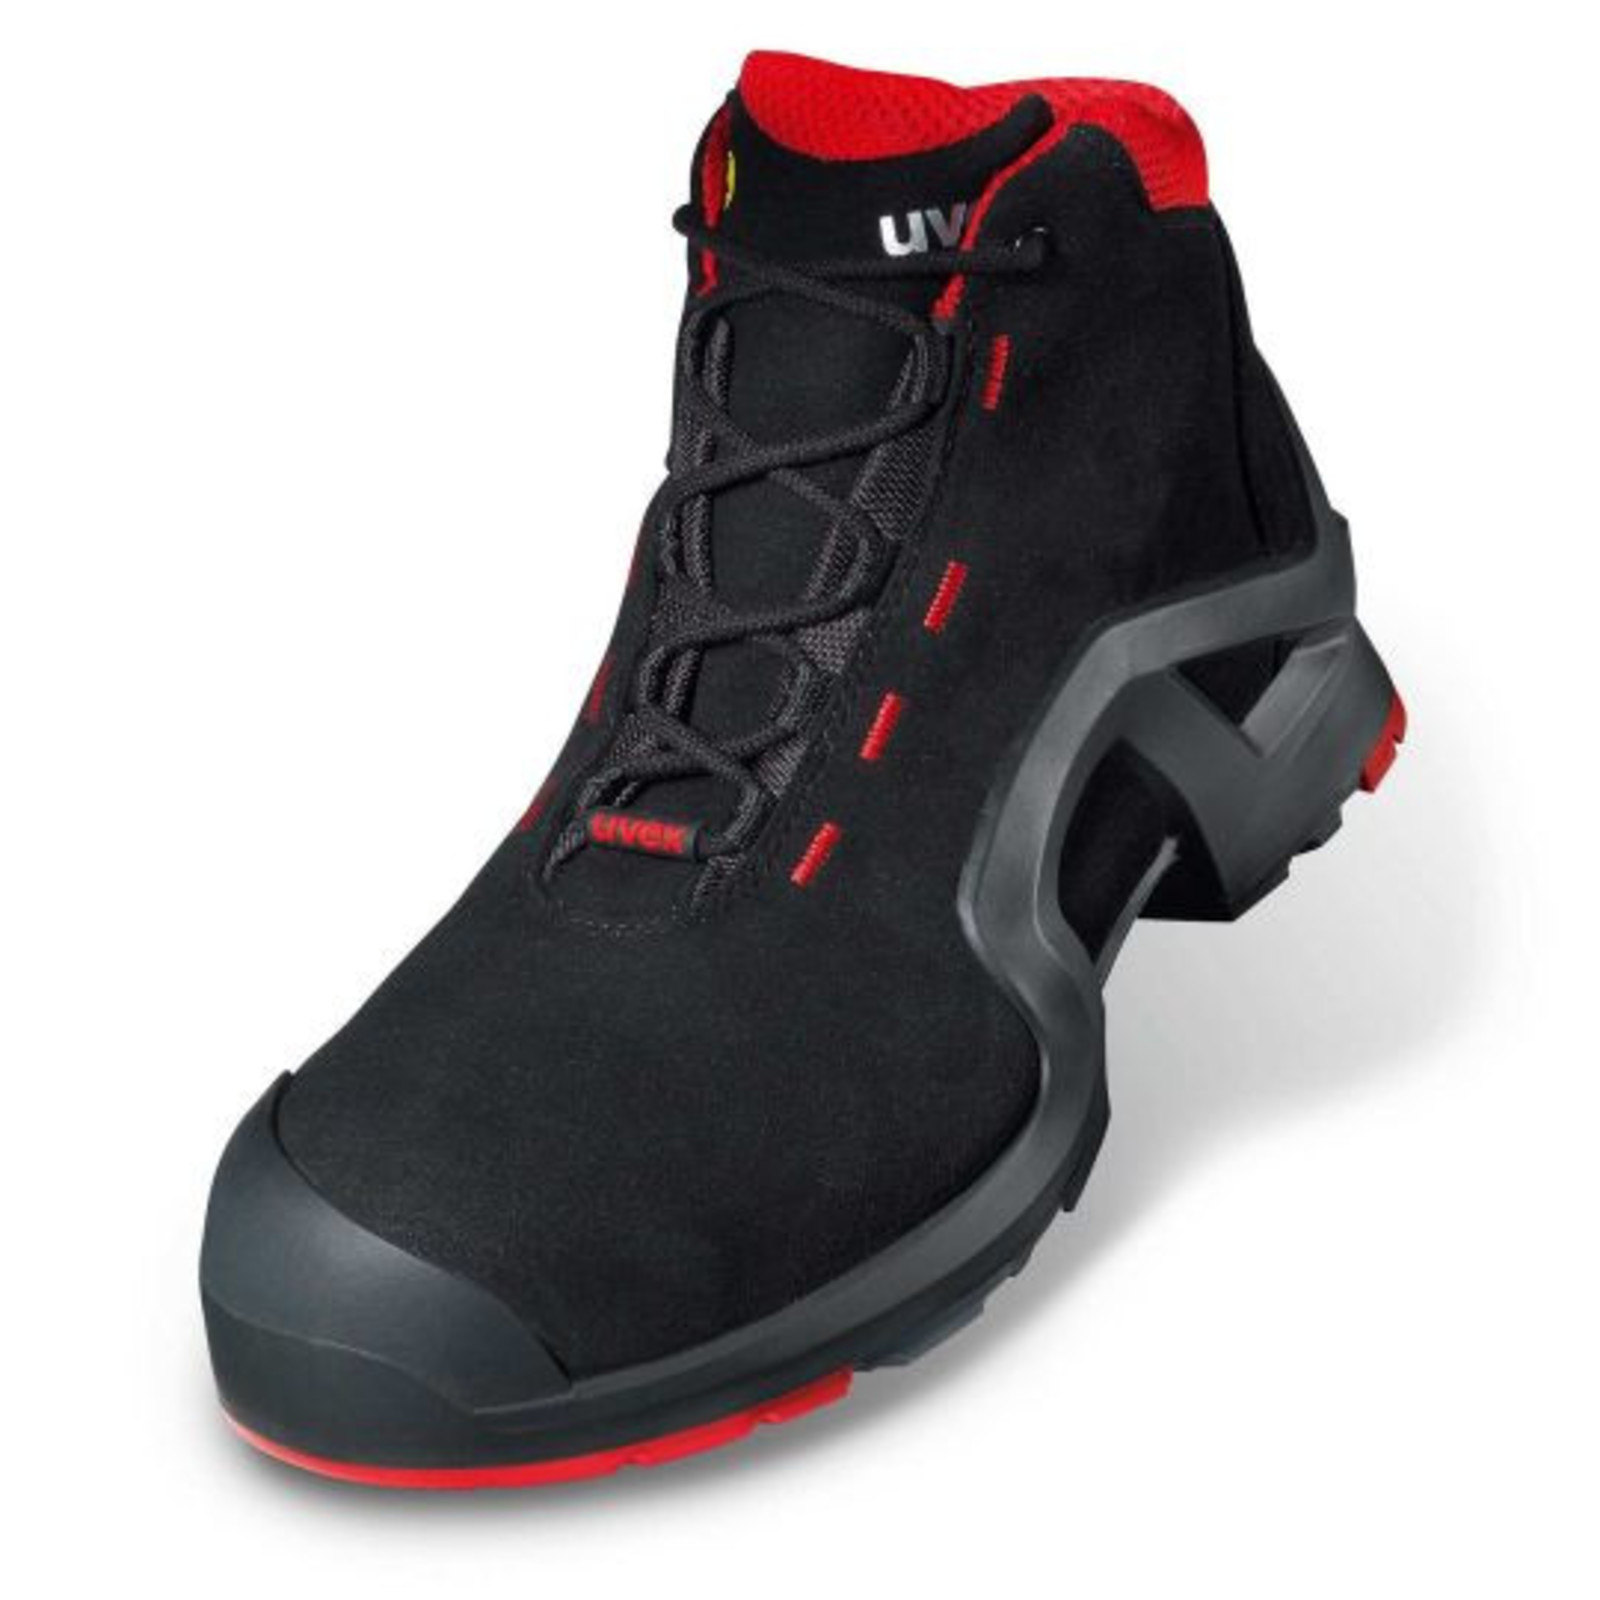 Vysoká bezpečnostná obuv Uvex 1 x-tended support S3 85172 - veľkosť: 51, farba: čierna/červená